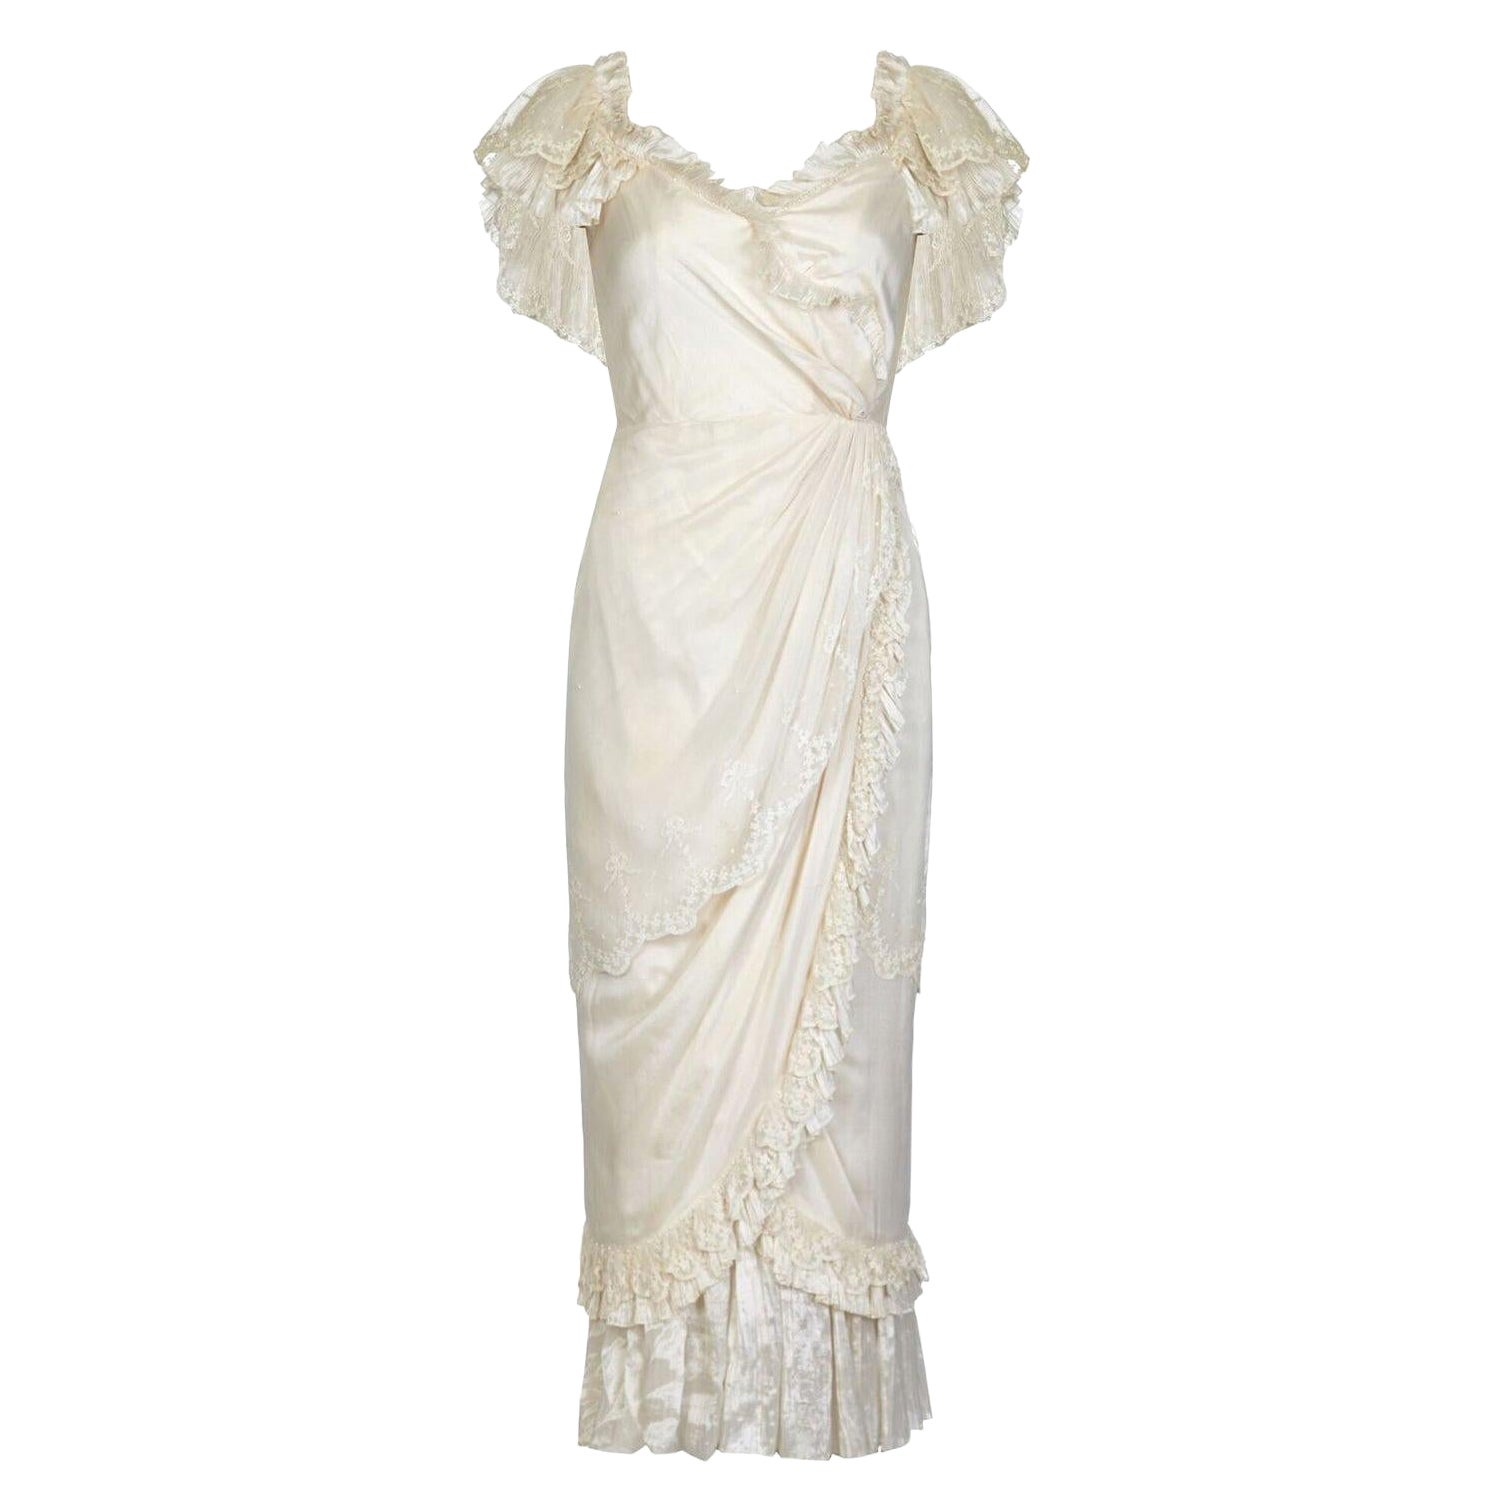 Andrea Wilkin Vestido de novia fantasía de seda marfil de los años 70 de estilo eduardiano